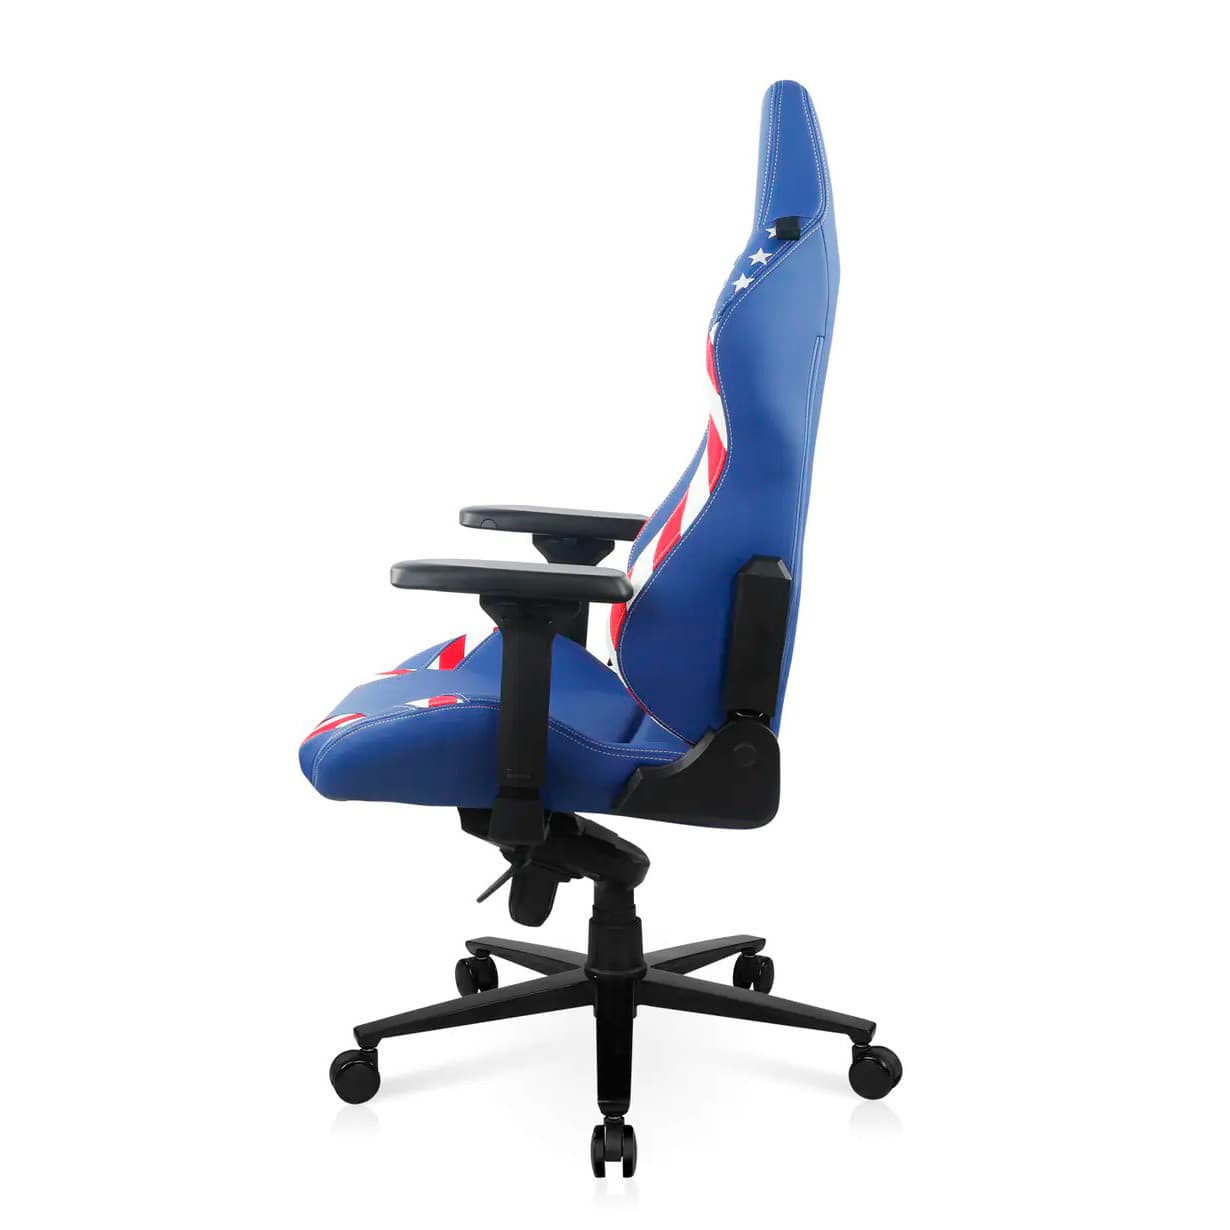 Геймерское кресло DXRacer CRA/D5000/BW